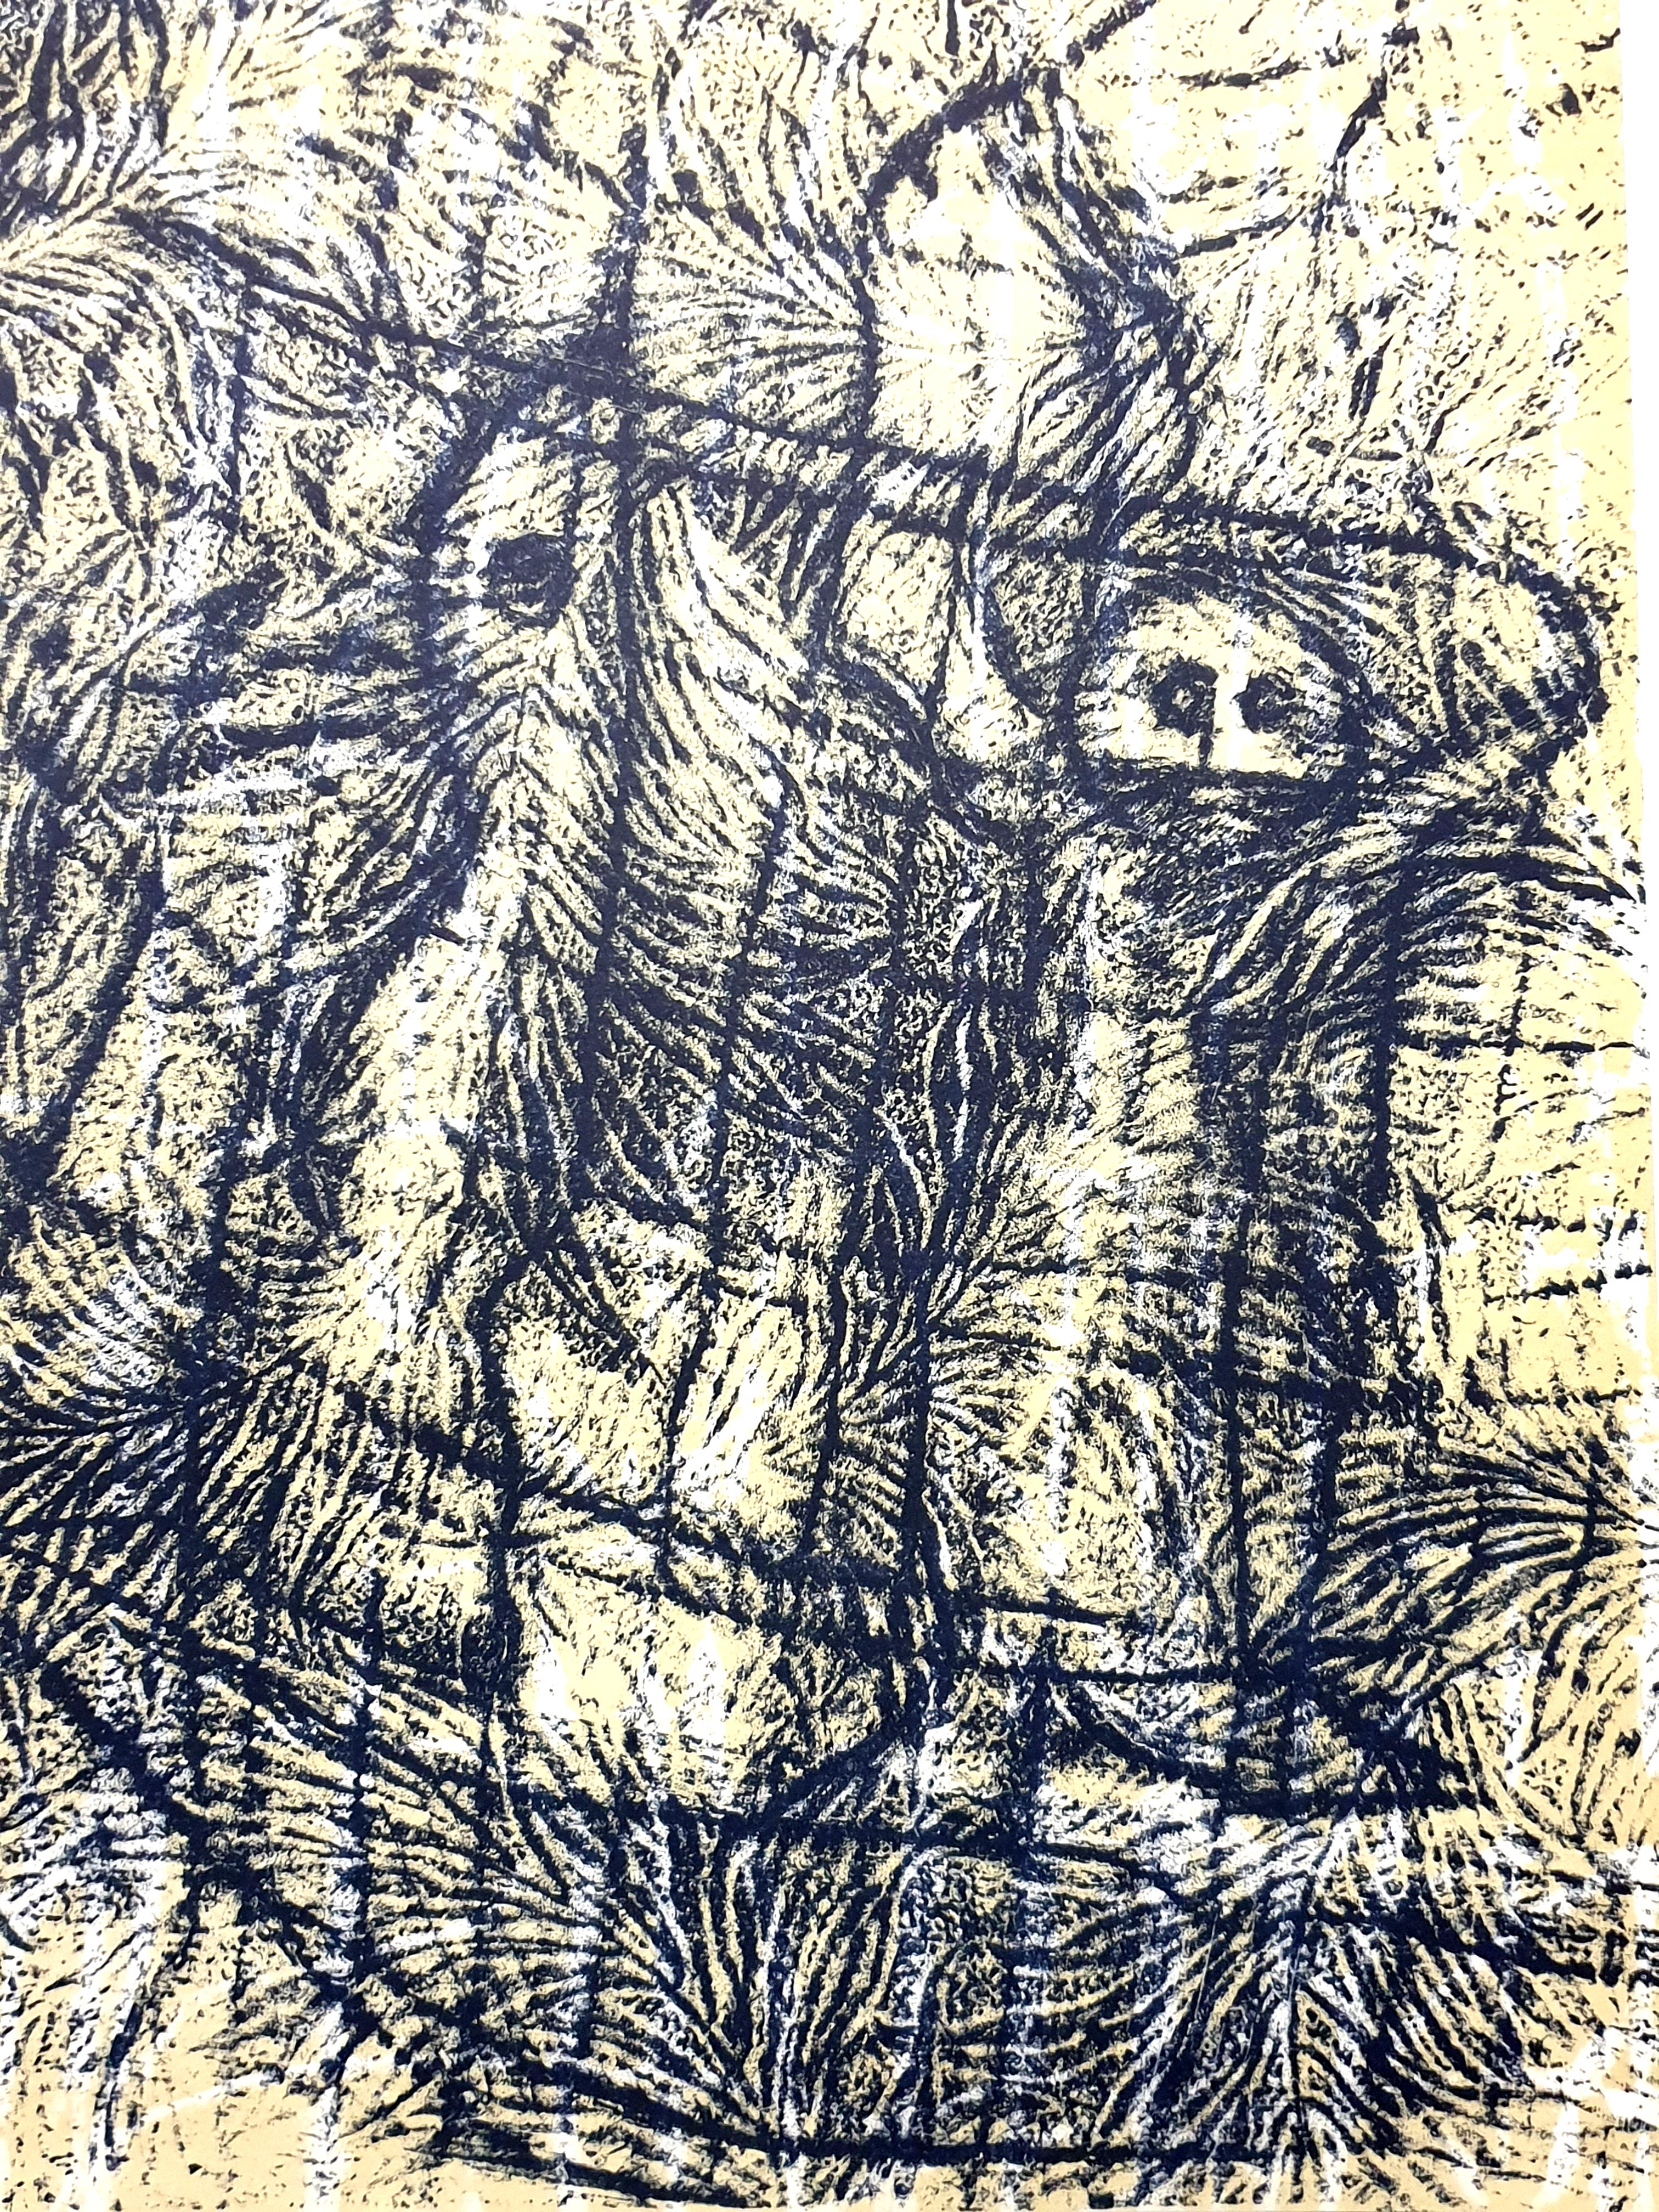 Composition - Lithographie originale de Max Ernst
1958
Dimensions : 32 x 24 cm
XXe siècle
Non signé et non numéroté, tel que publié

Max Ernst est né à Bruhl, une localité située près de Cologne, en Allemagne. Il a été élevé dans une famille